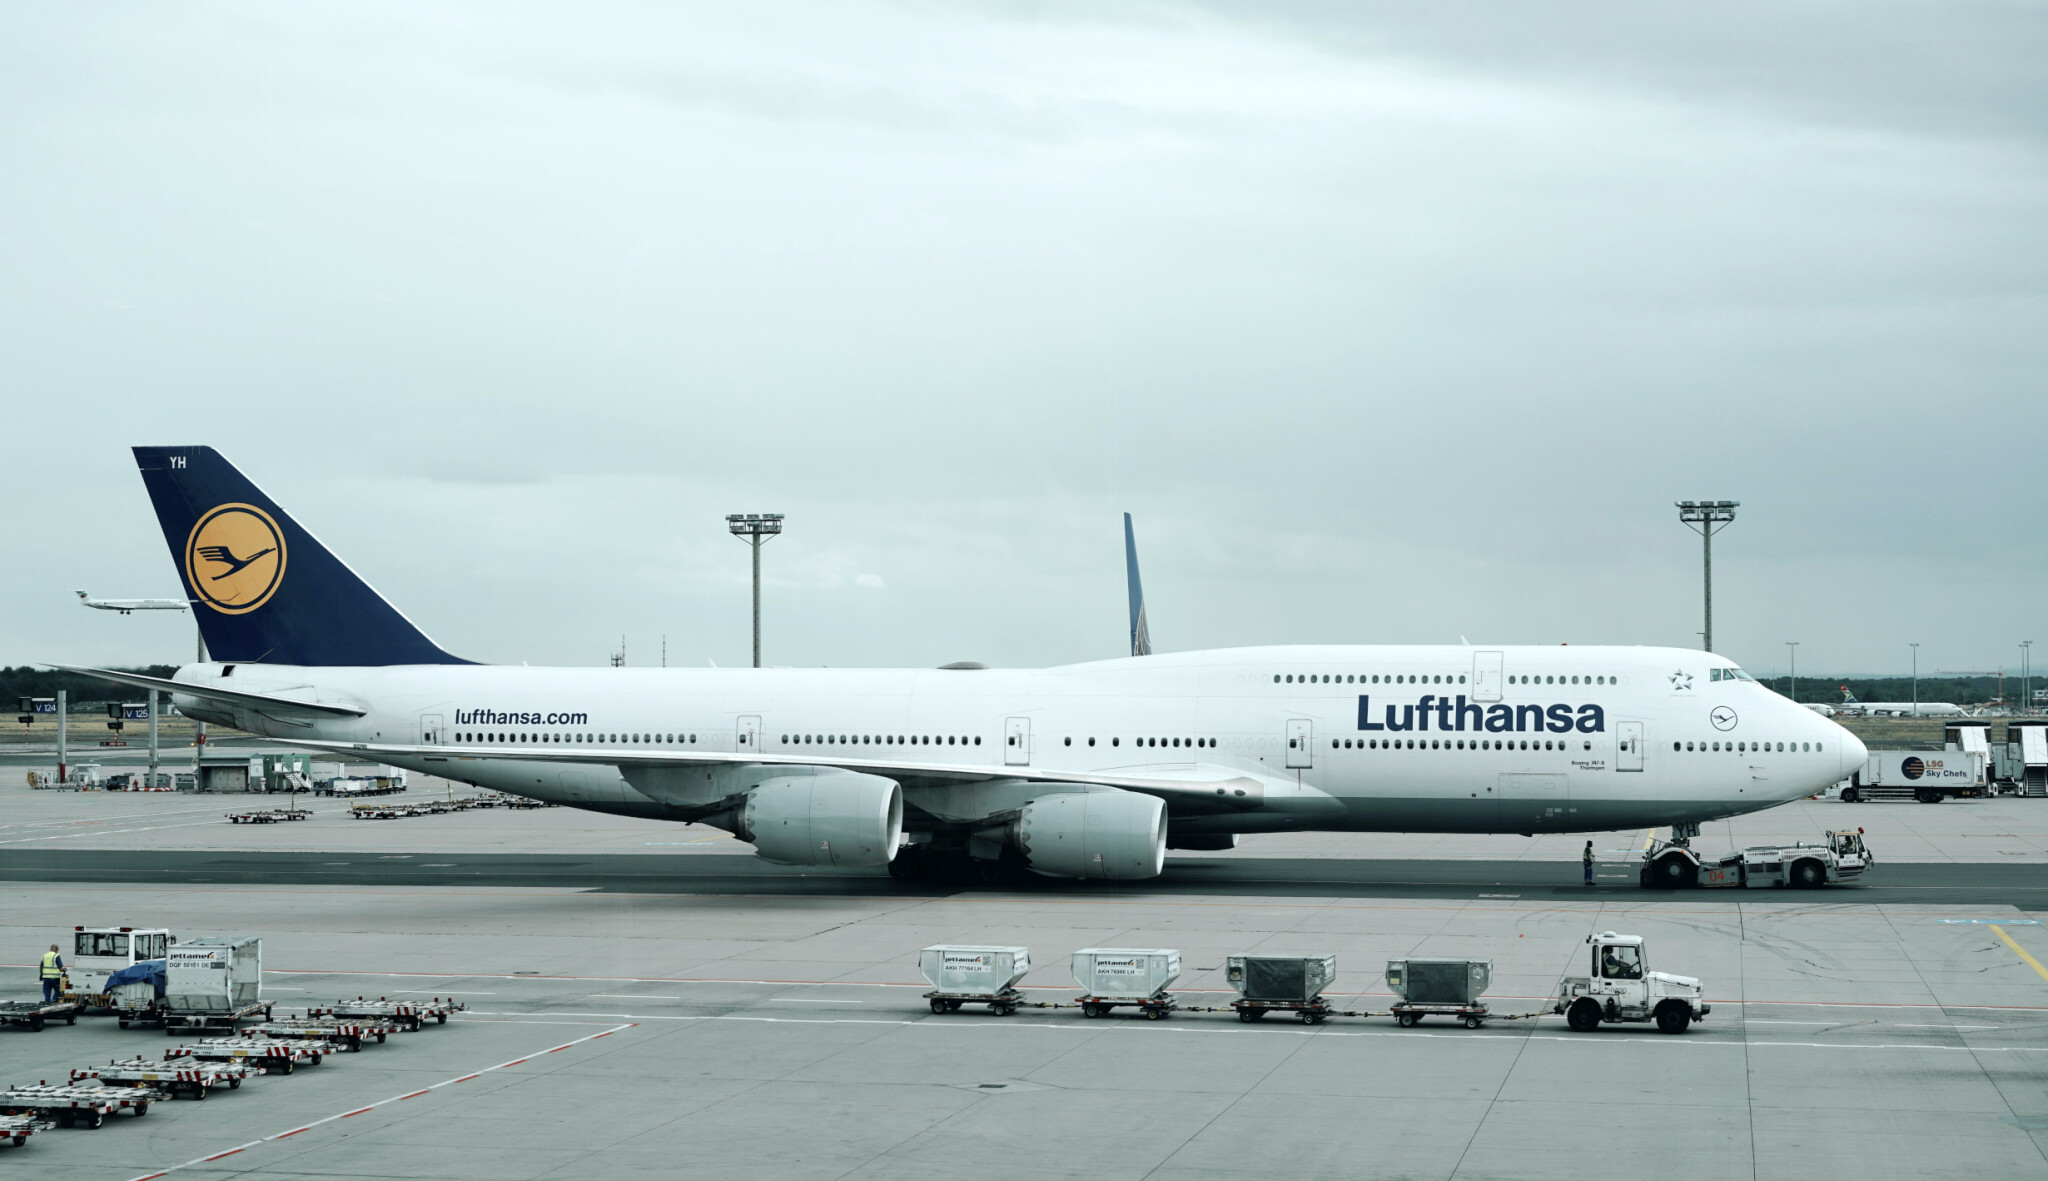 Roste poptávka po cestování. Lufthansa hlásí třetí nejlepší výsledek v historii